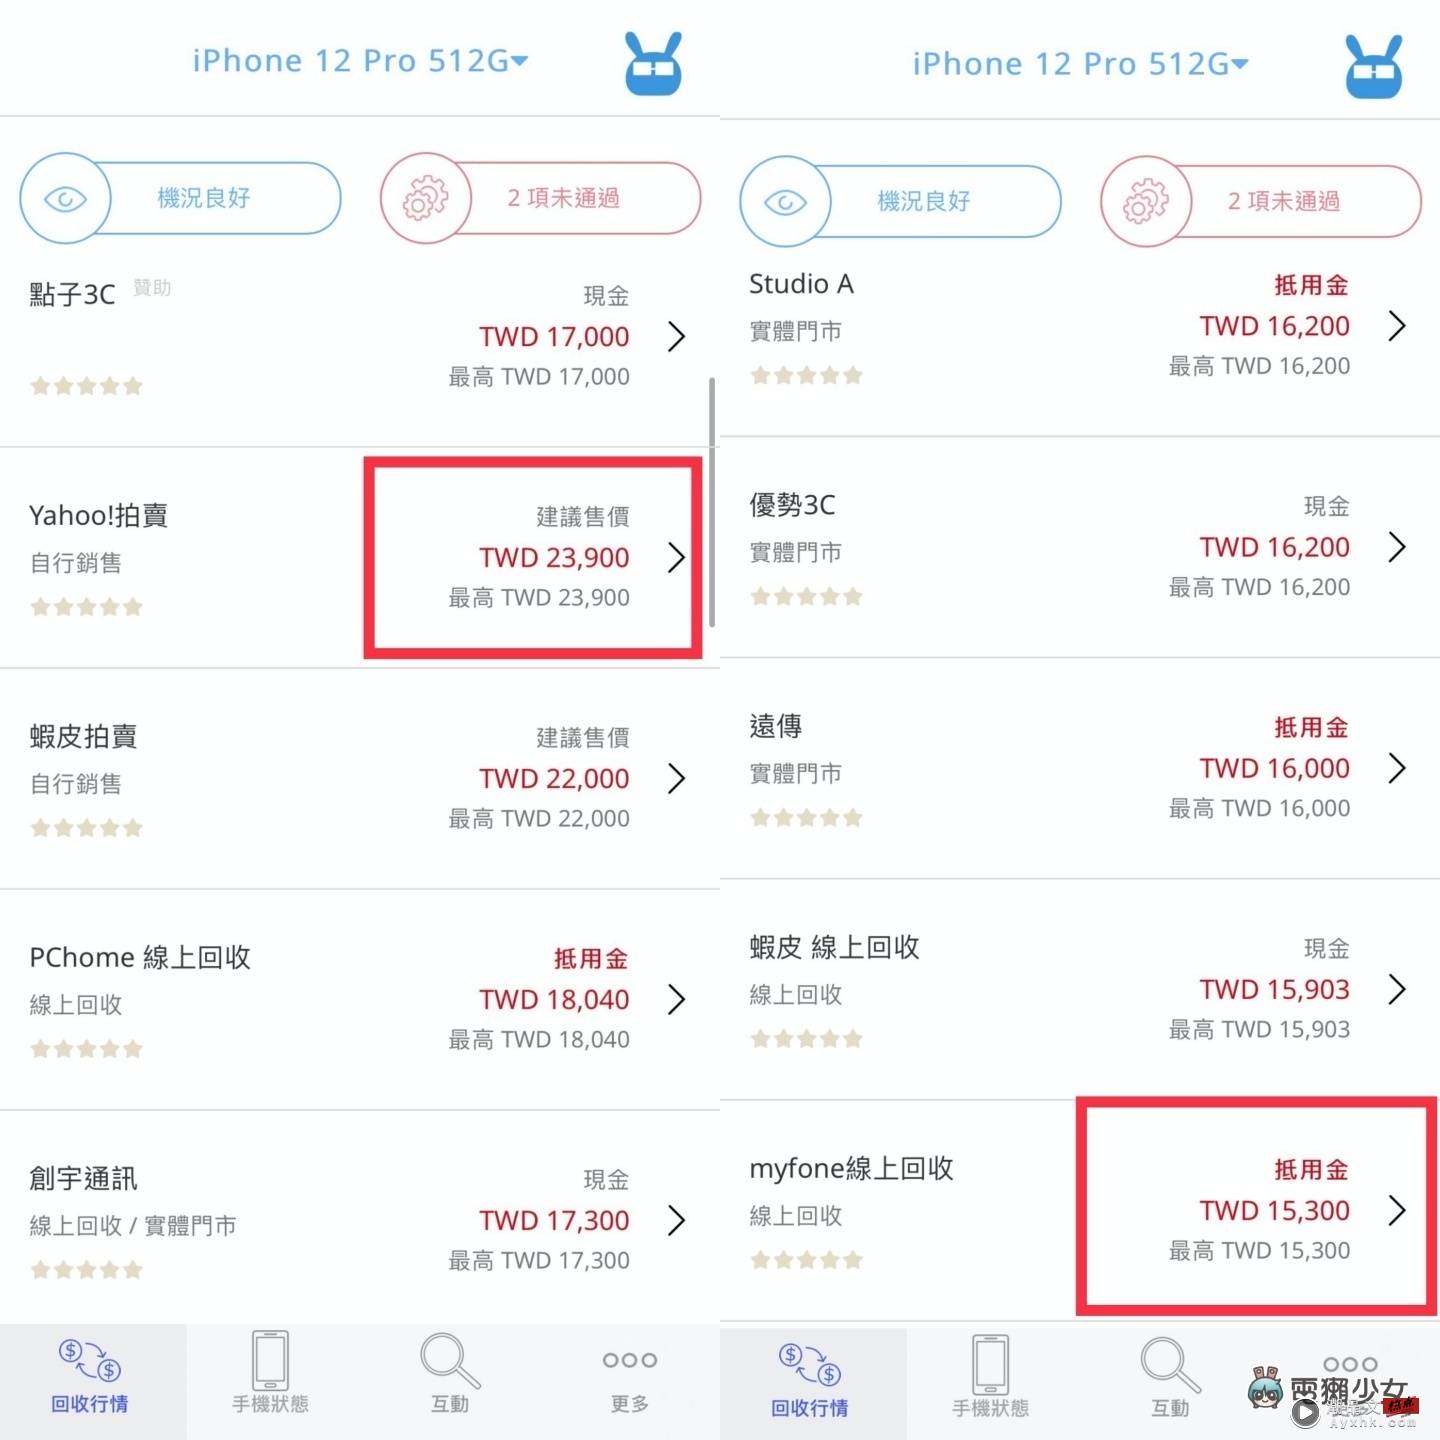 好想买 iPhone 14 Pro 但钱钱不够！靠卖旧机补贴怎样最划算？ 中国台湾二手通路回收价，‘ 手机医生 ’帮你一次比清楚！（Android／iOS） 数码科技 图7张